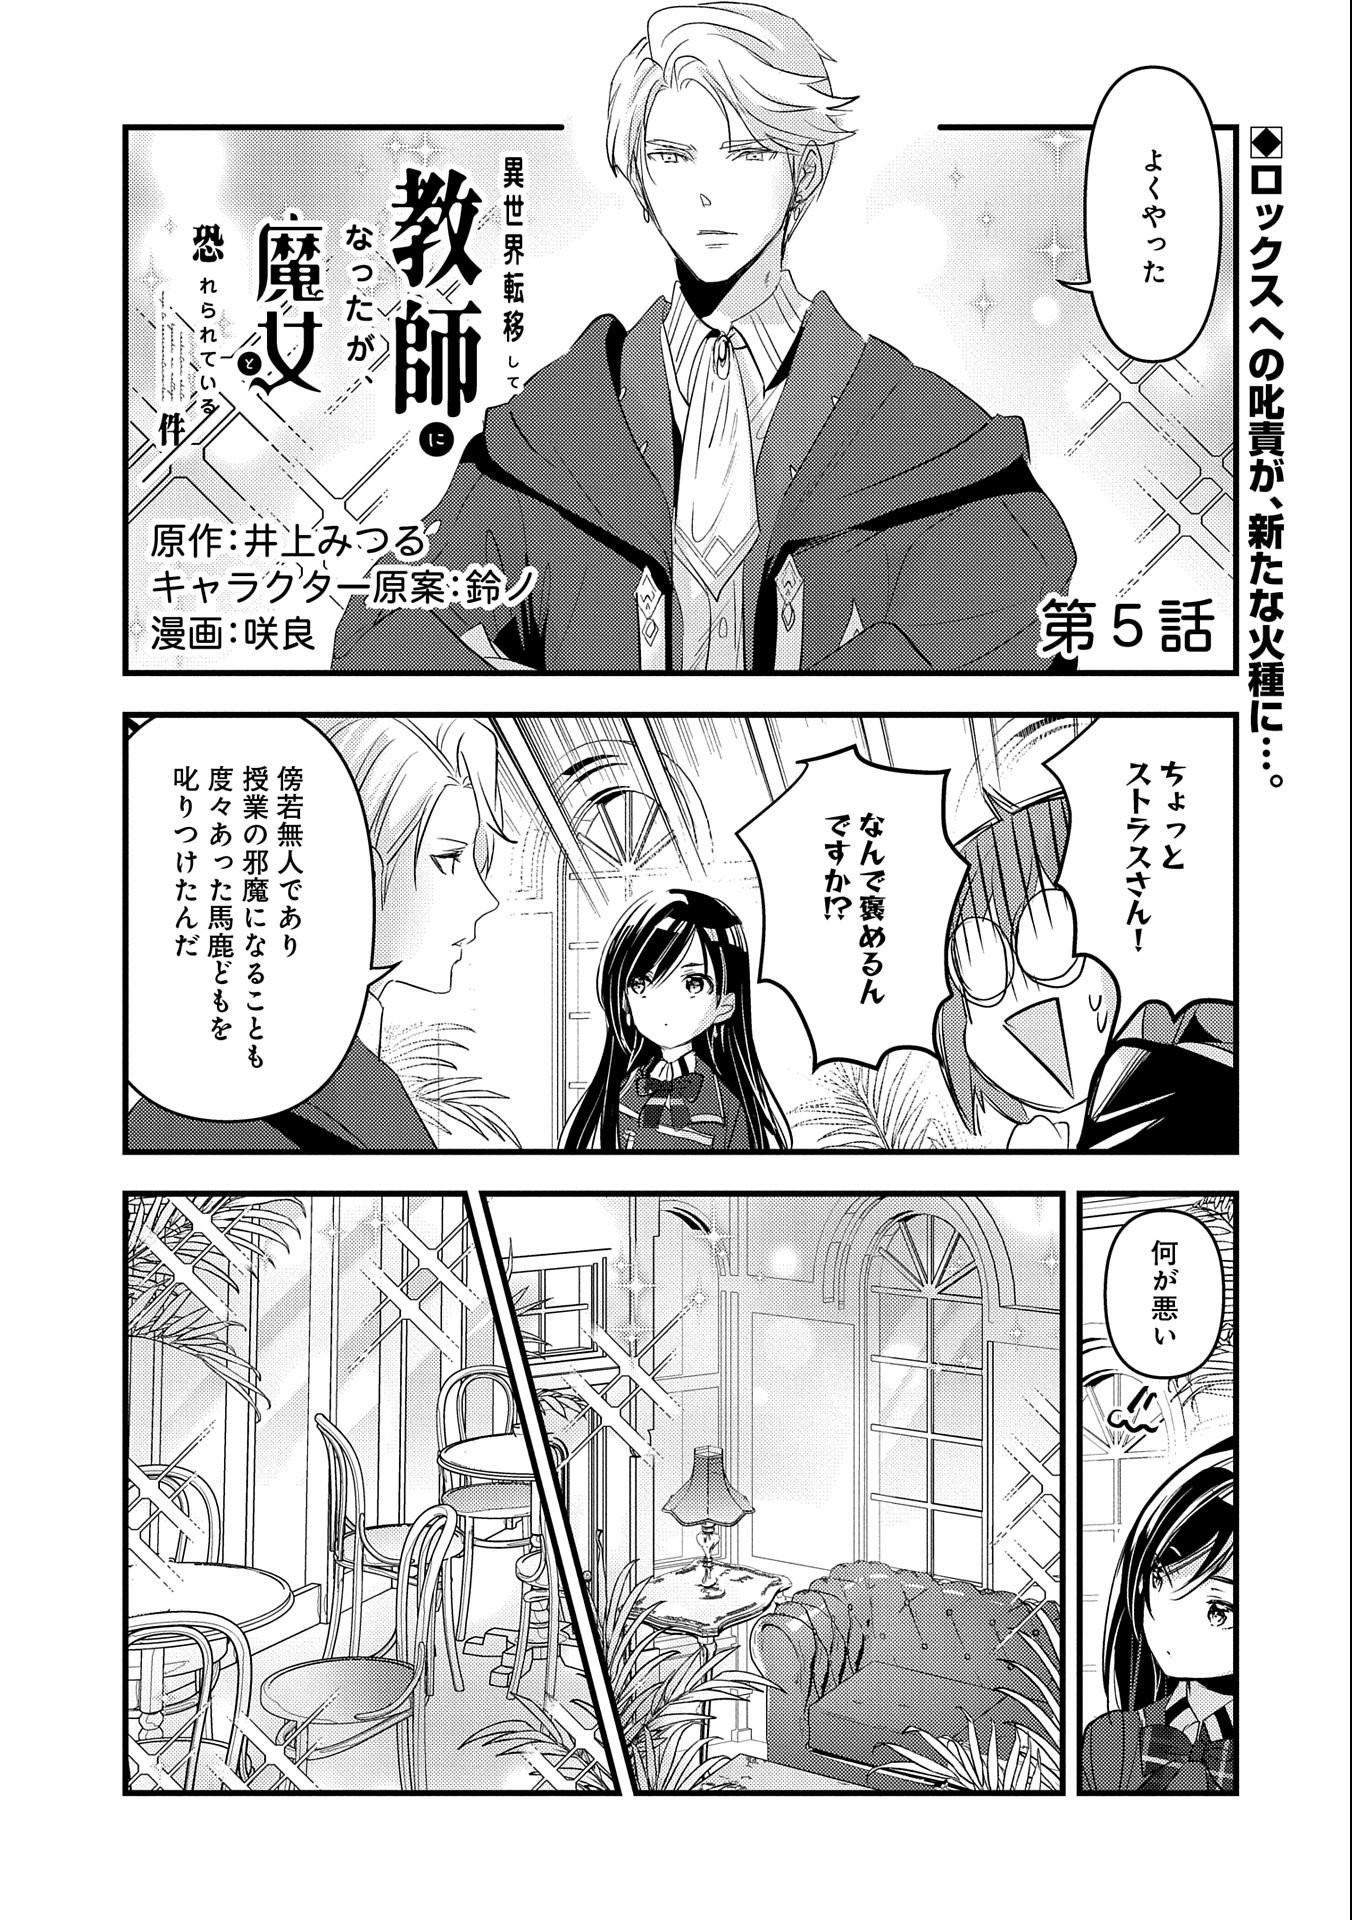 Isekai Teni shite Kyoushi ni natta ga, Majo to Osoreareteiru Ken – Aoi-sensei no Gakuen Funtou Nisshi - Chapter 5 - Page 1